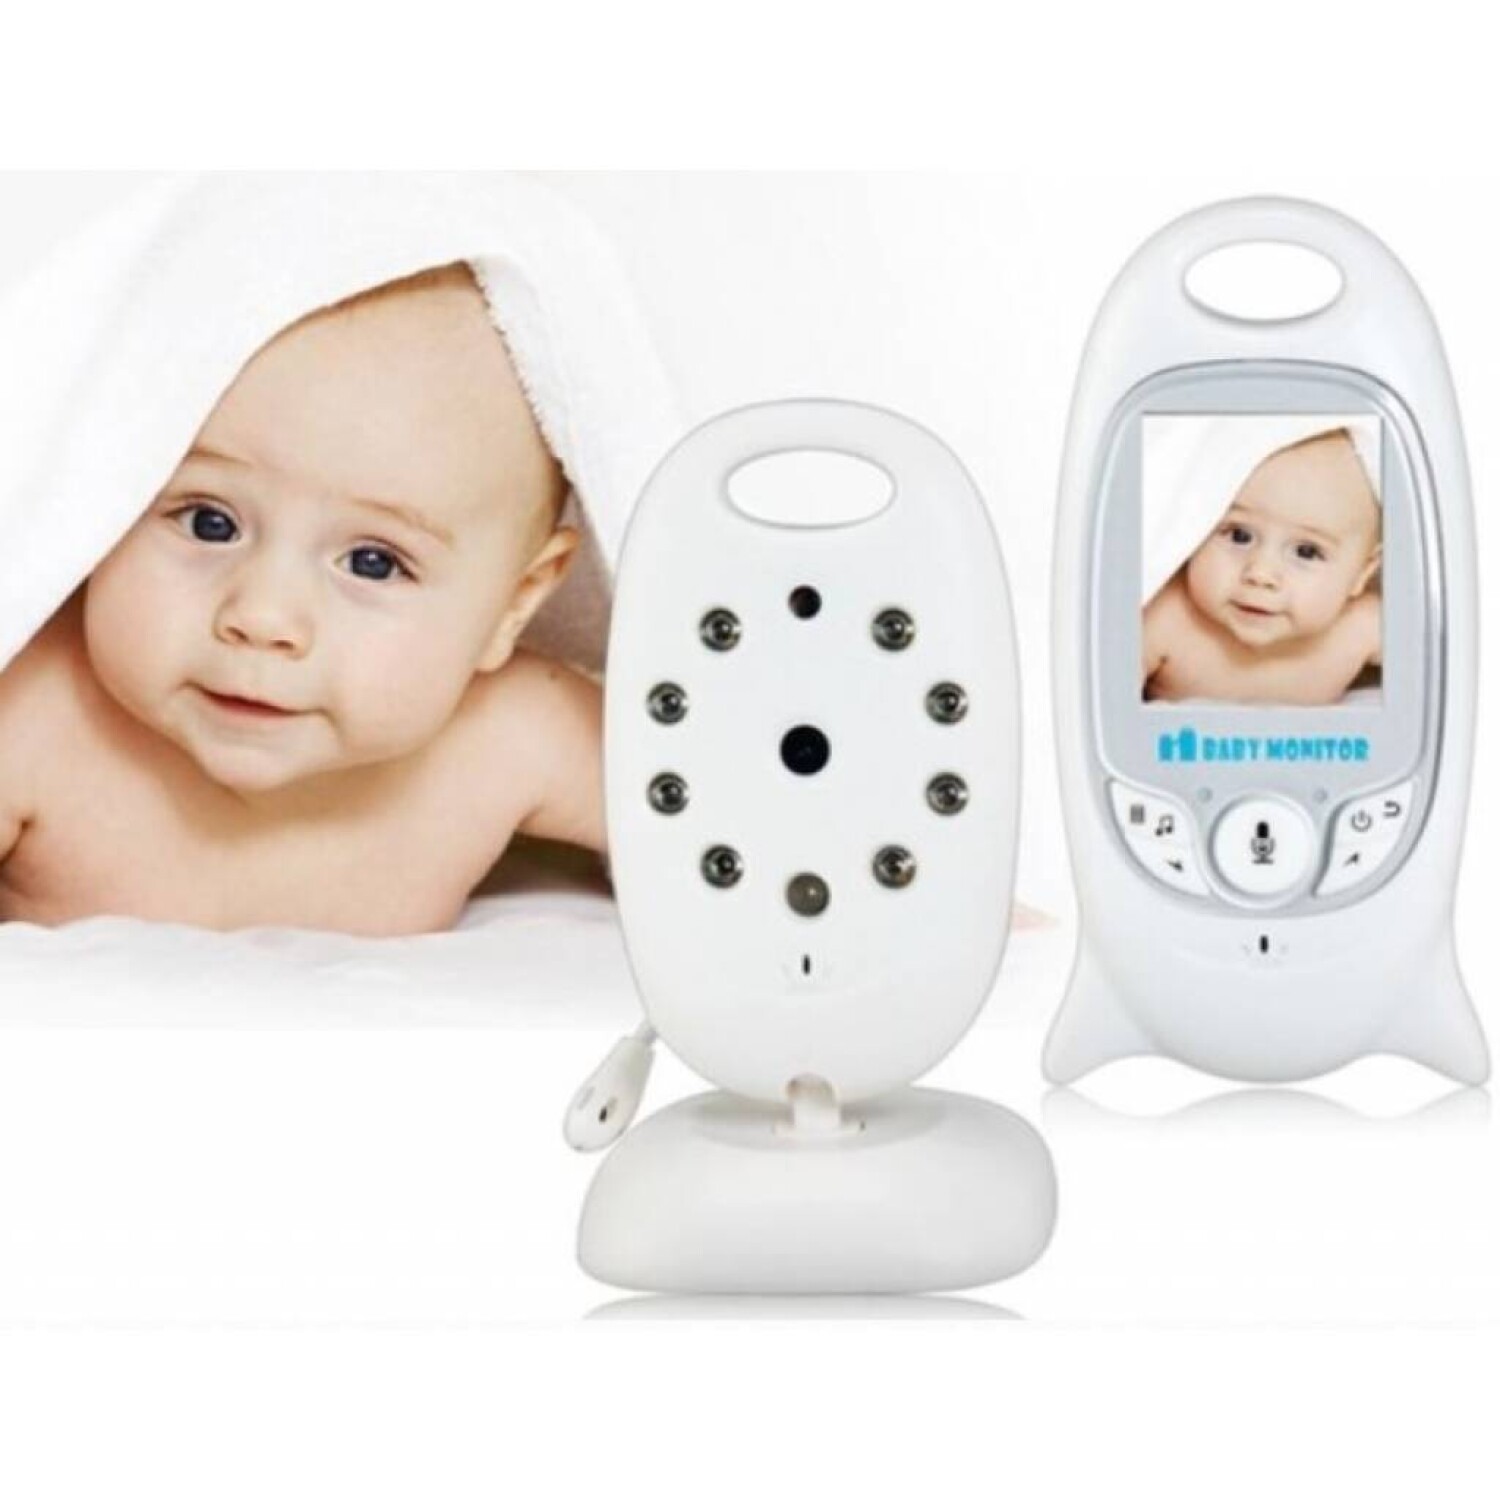 Monitor de Bebe Babycall Cámara Intercomunicador Espía - 001 — Universo  Binario